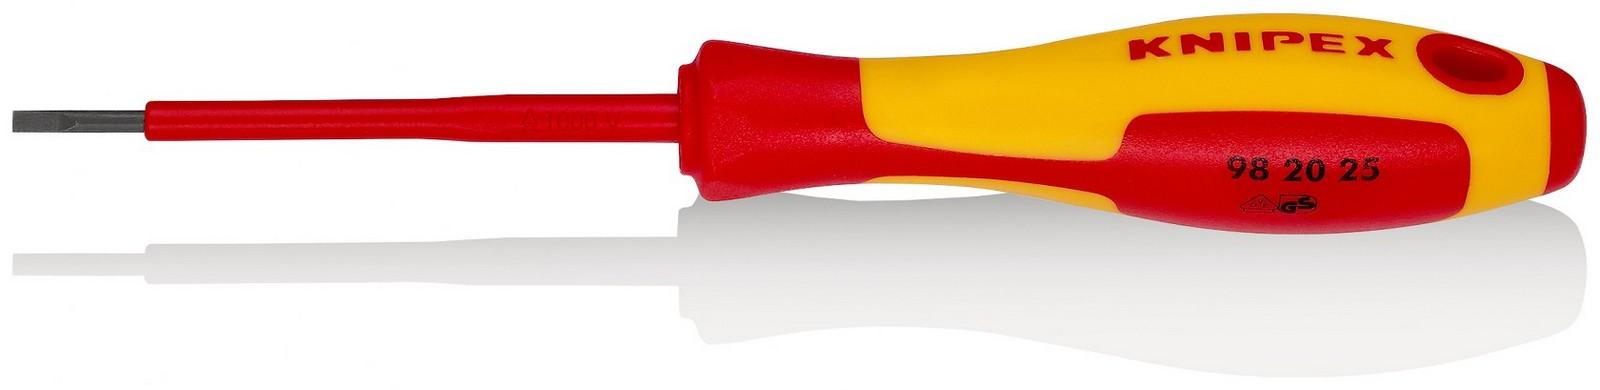 KNIPEX Odvijač ravni 1000V VDE 2.5mm 98 20 25 crveno-žuti